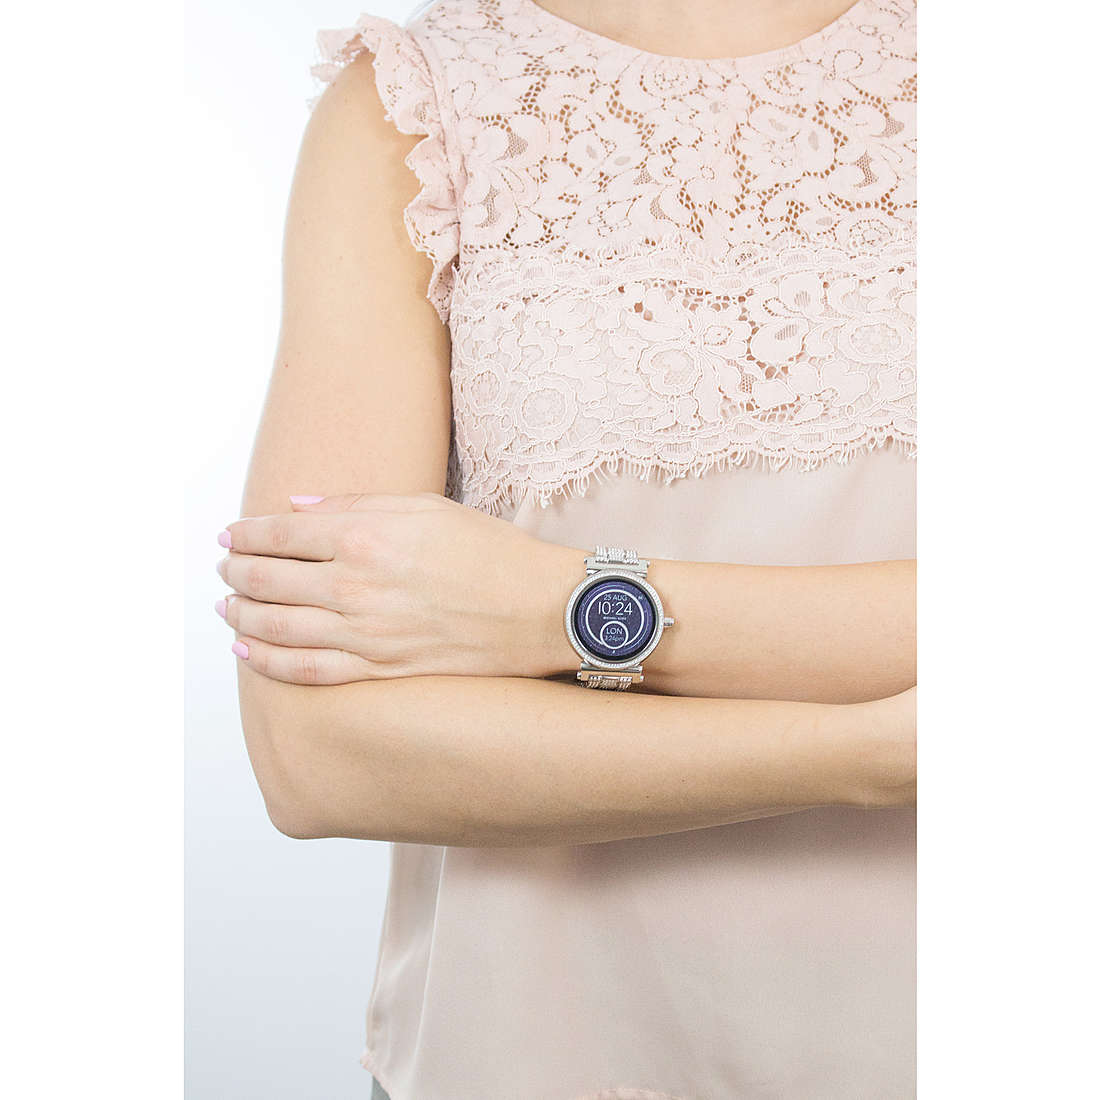 Michael Kors Smartwatches Sofie woman MKT5024 wearing